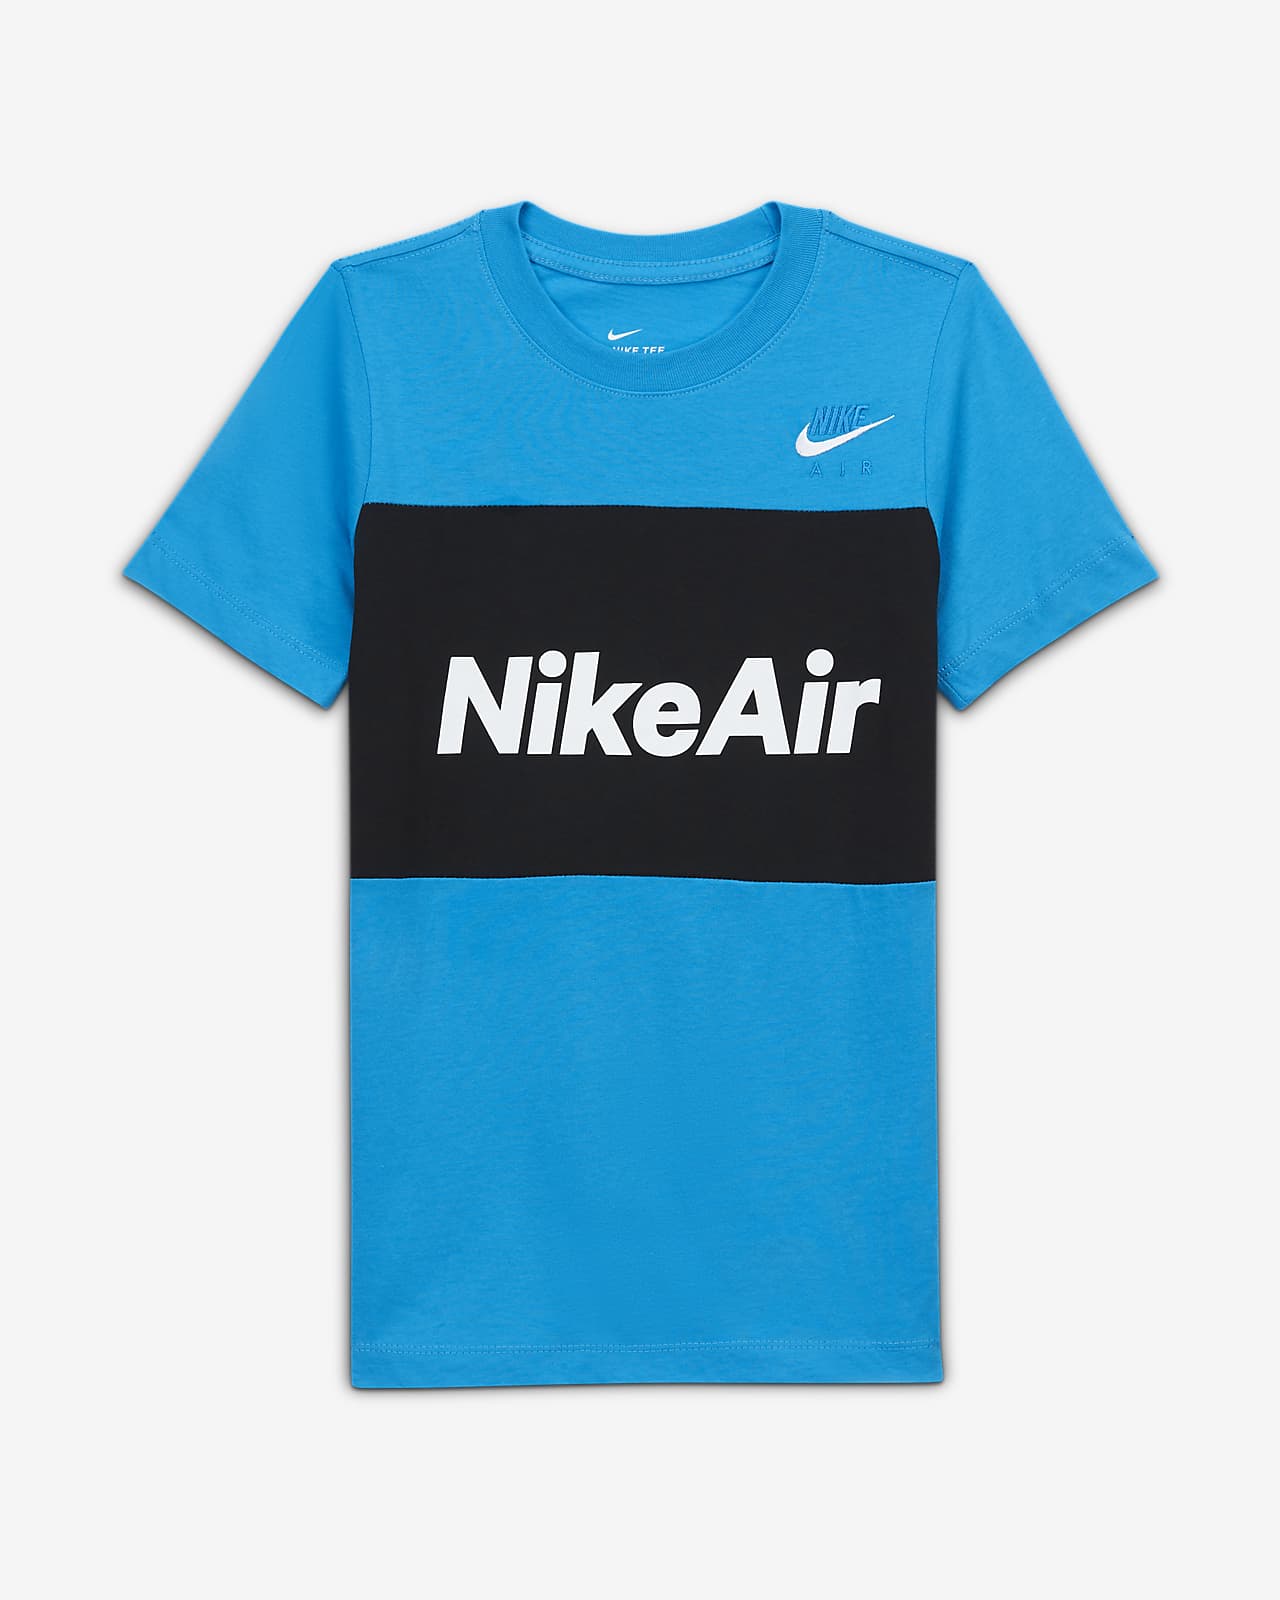 nike air blue t shirt